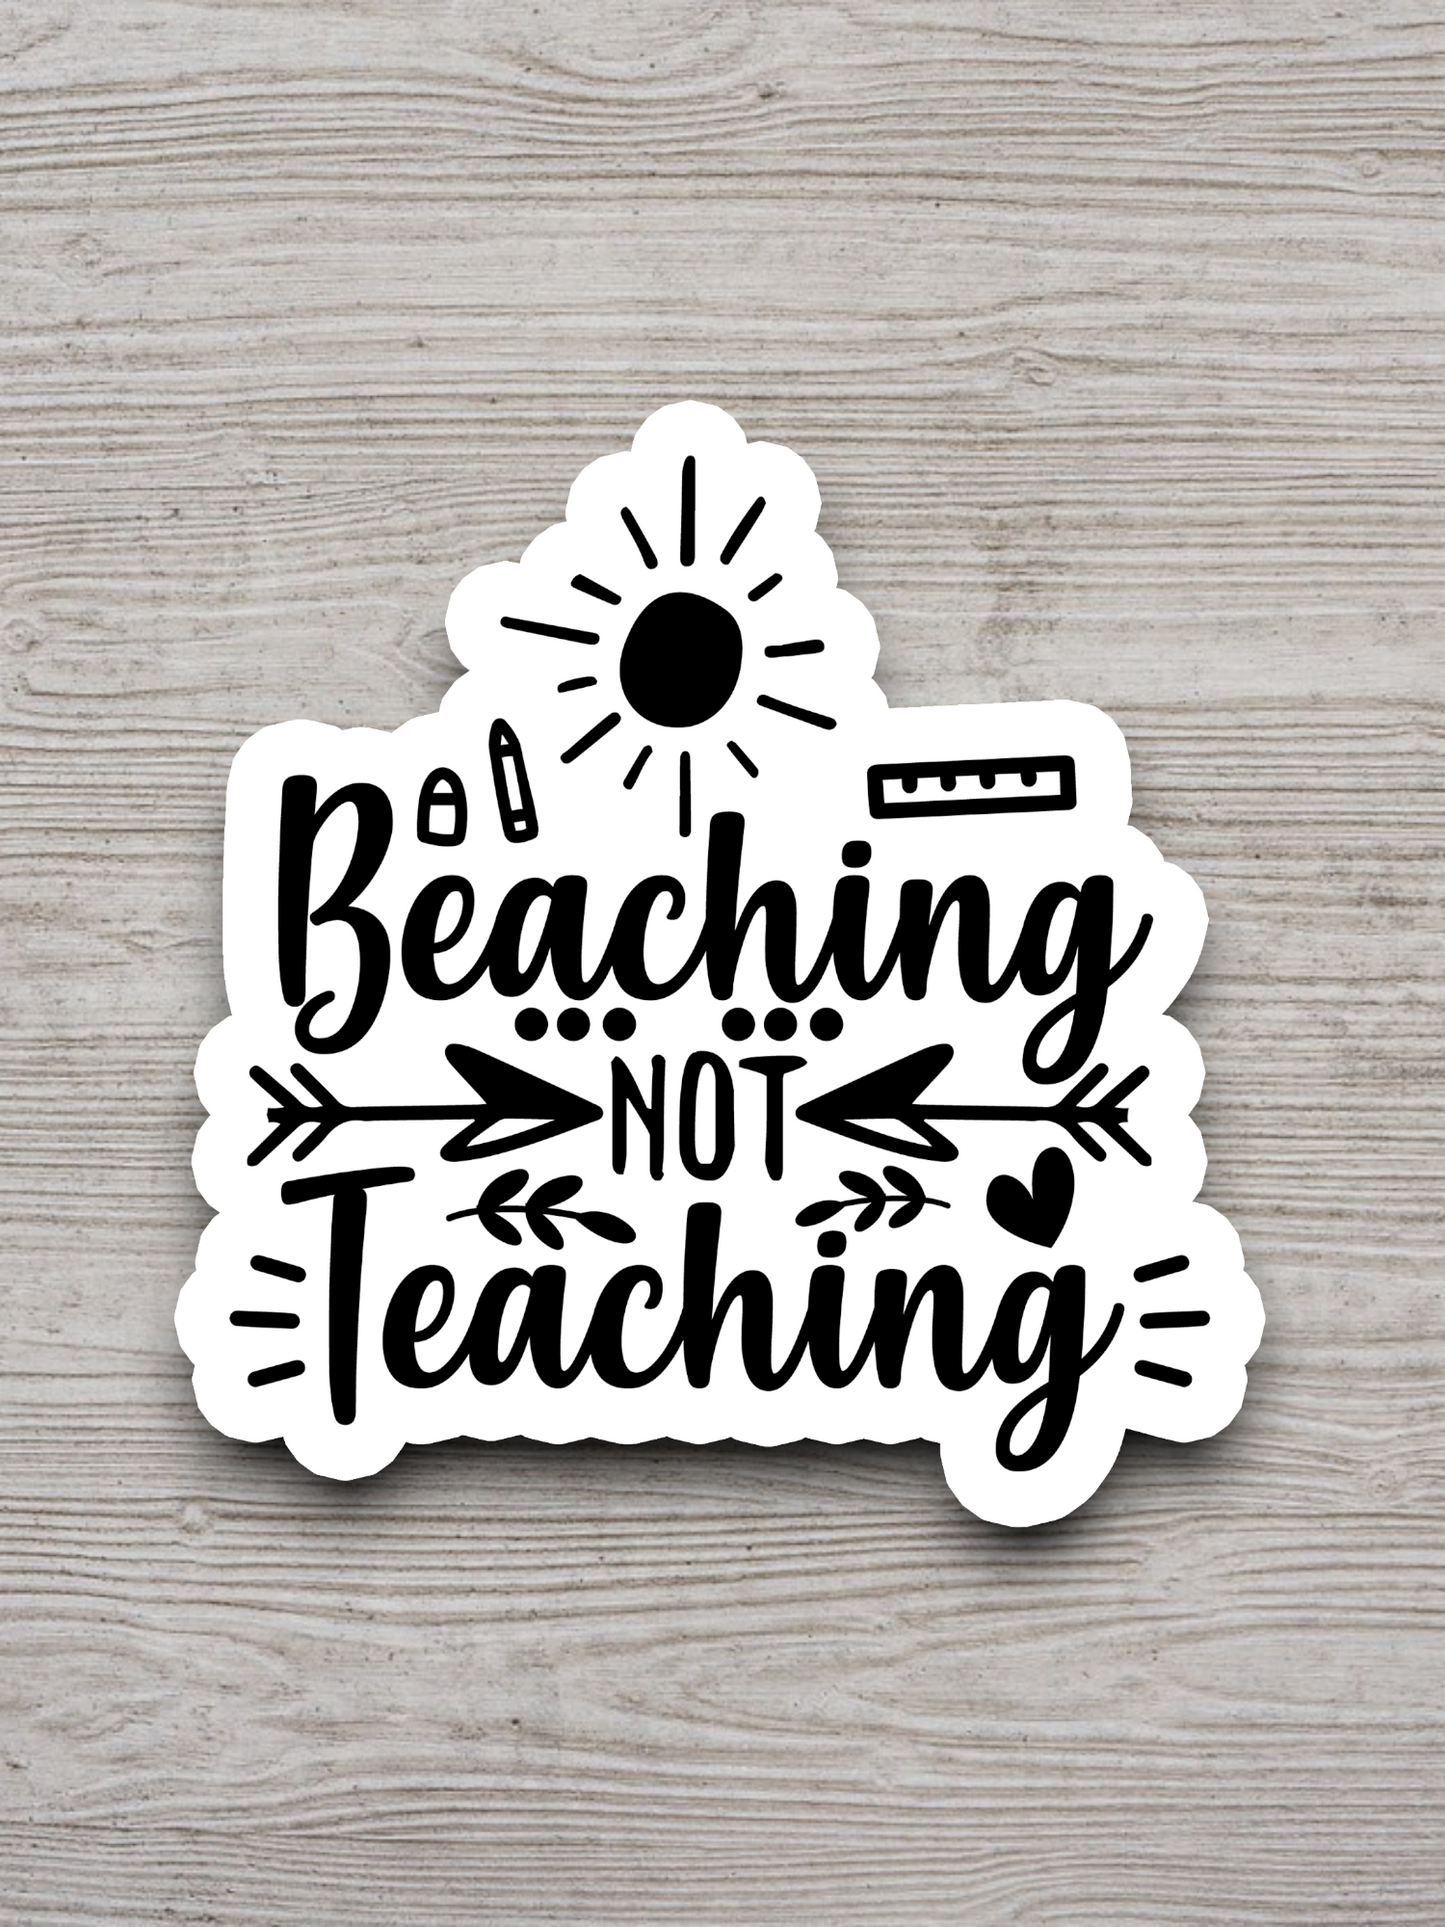 Beaching Not Teaching Sticker